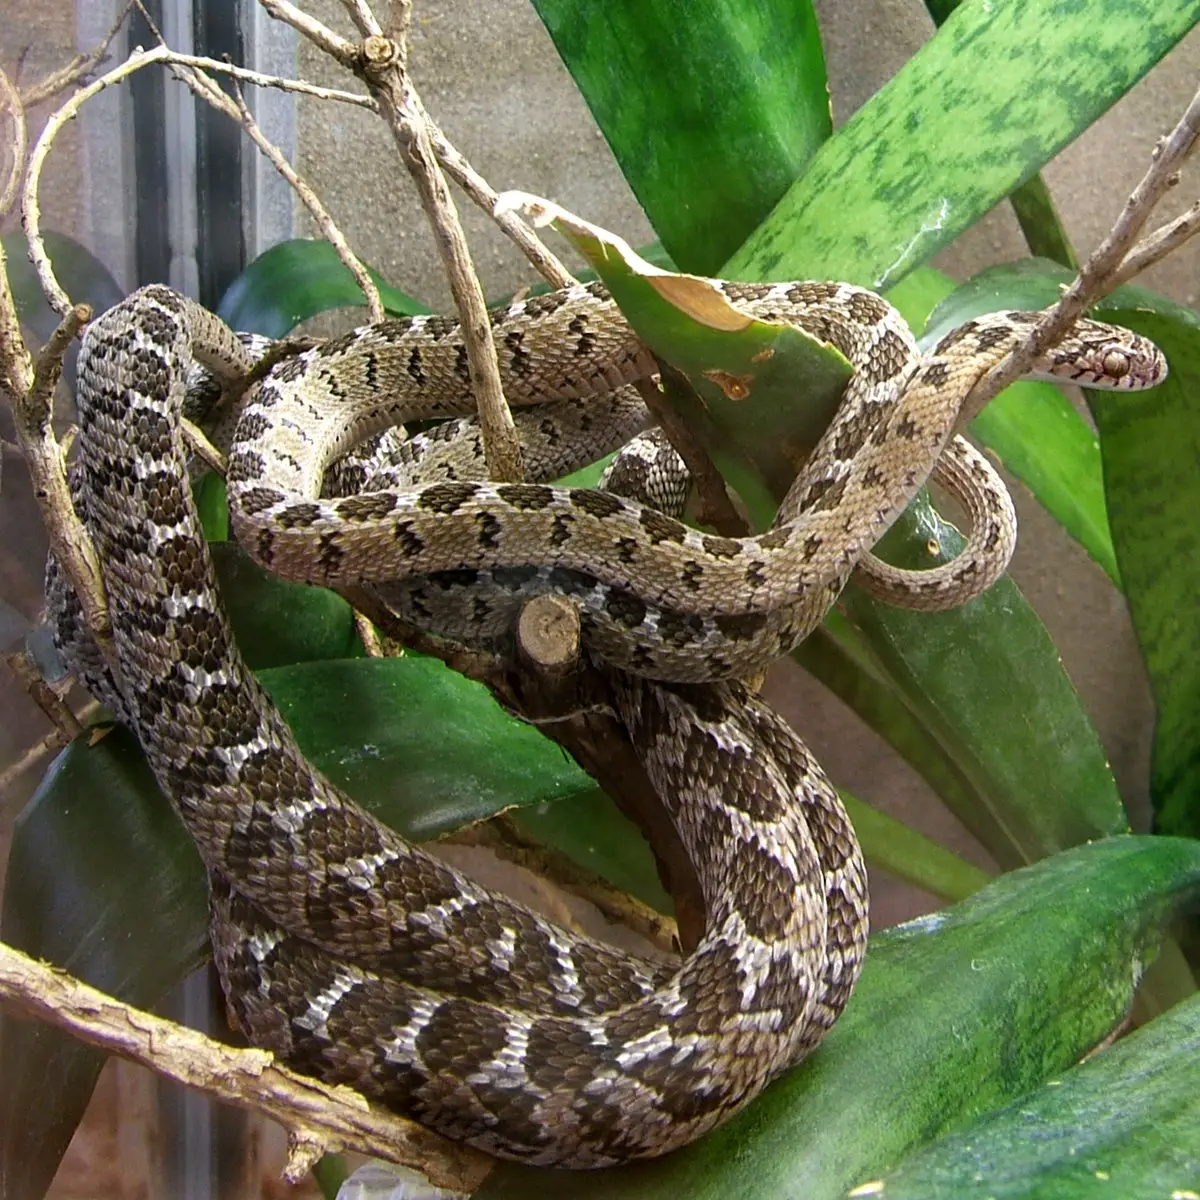 Egg-Eating Snake - The Animal Facts - Appearance, Diet, Habitat, Behavior